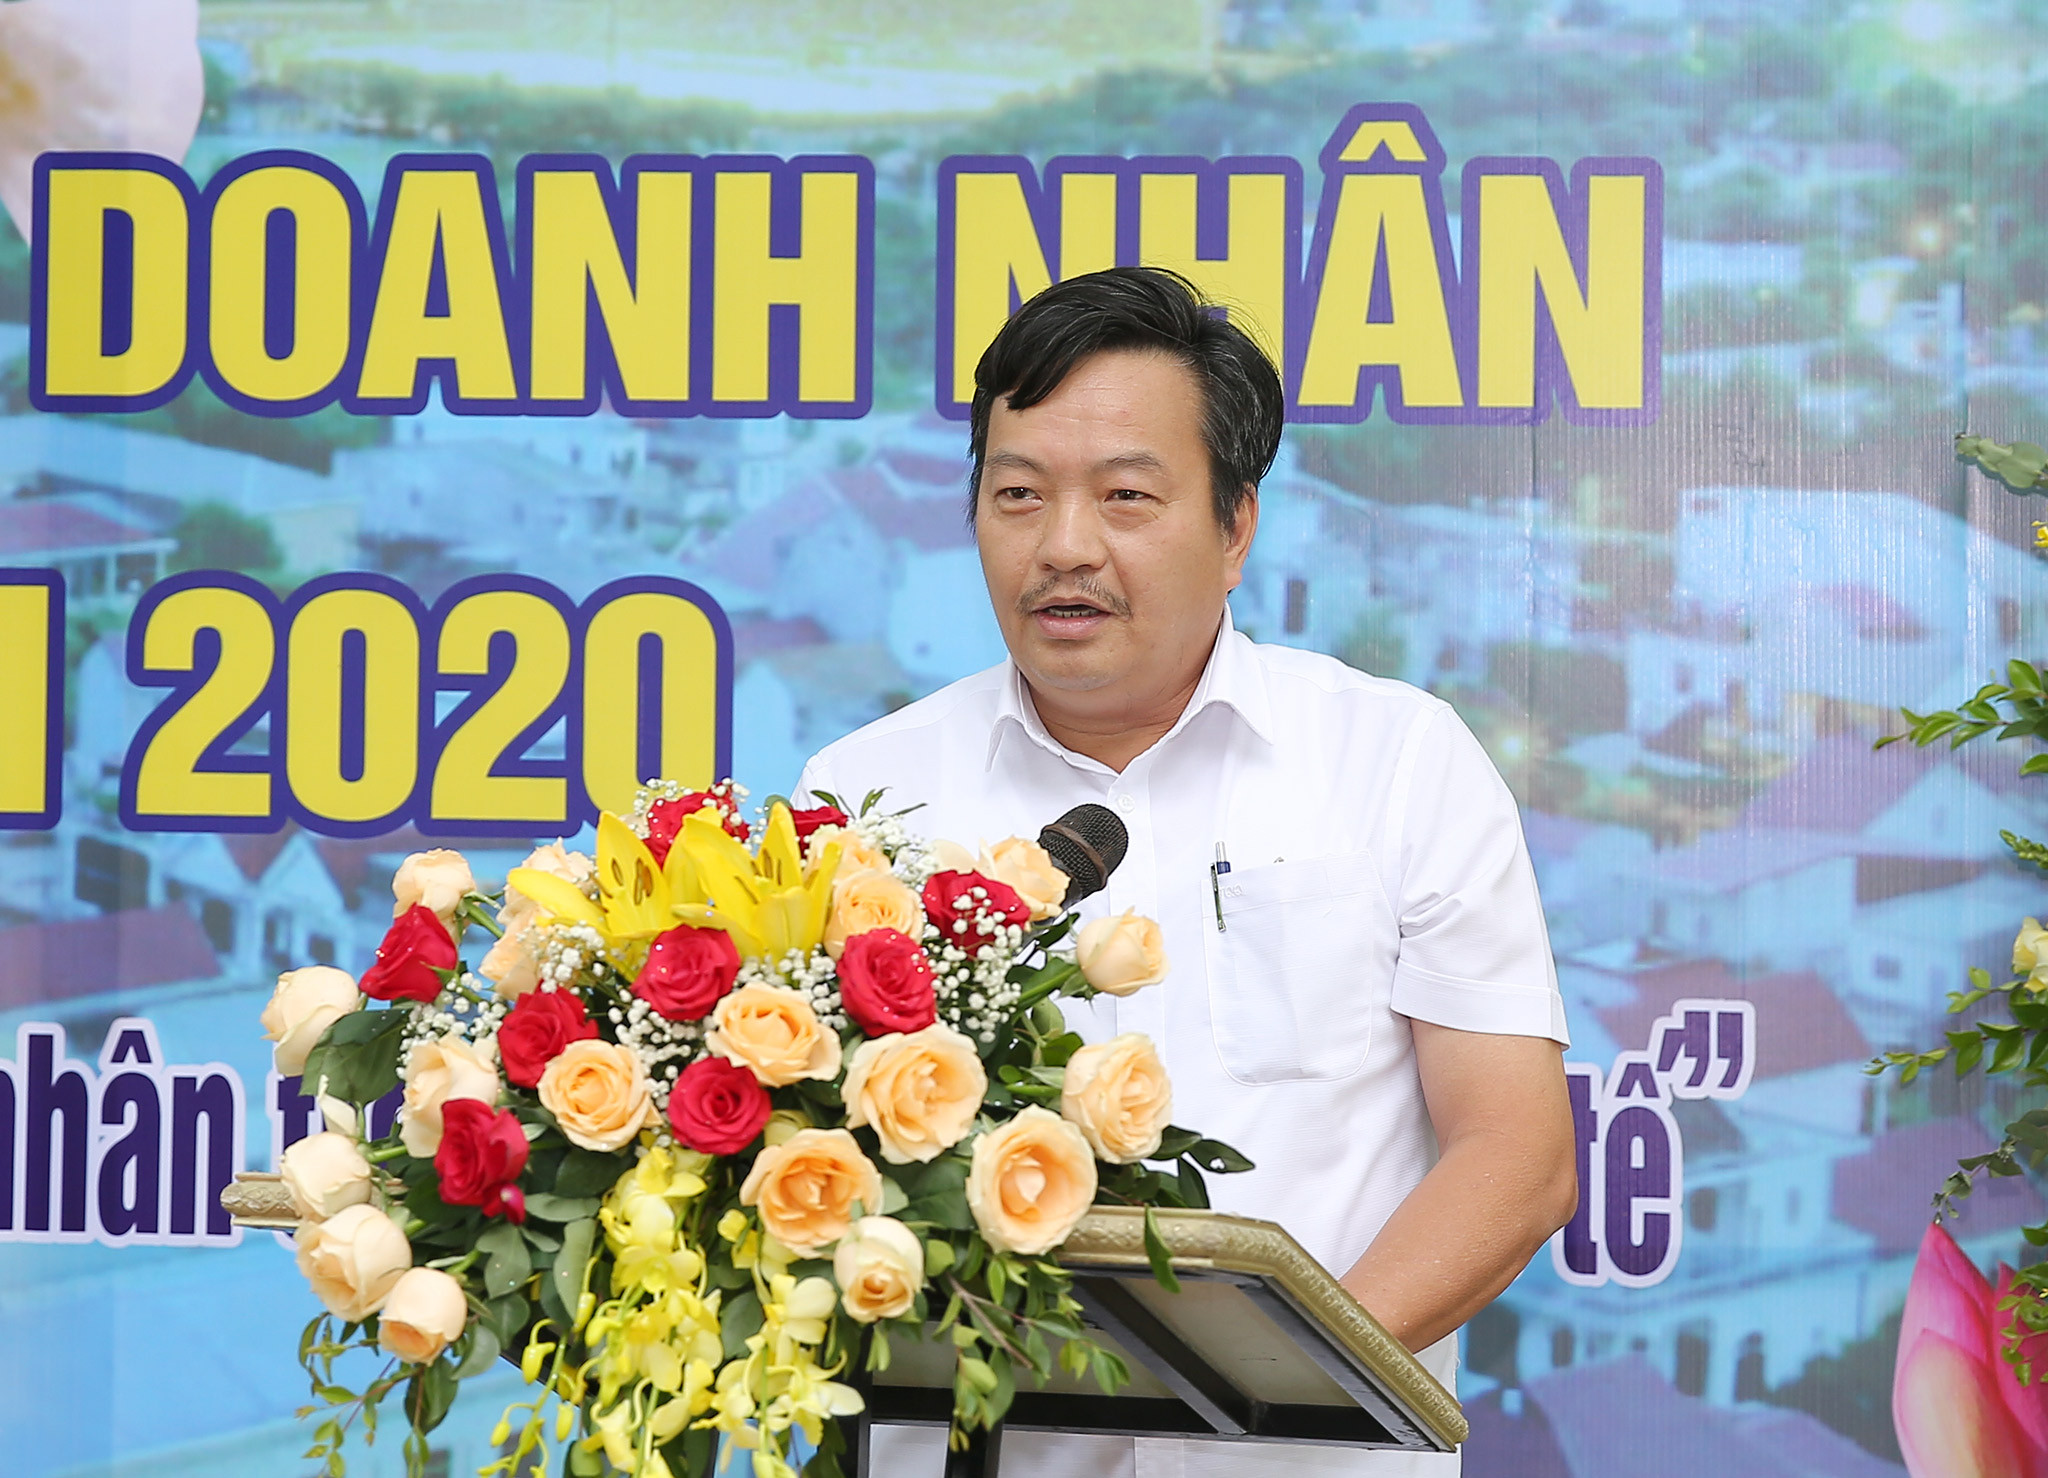 Ông Trần Anh Sơn - Chủ tịch Hội doanh nghiệp tiêu biểu tỉnh Nghệ An cho rằng rút ngắn thủ tục hành chính mang lại lợi ích lớn cho các doanh nghiệp. Ảnh: Lâm Tùng